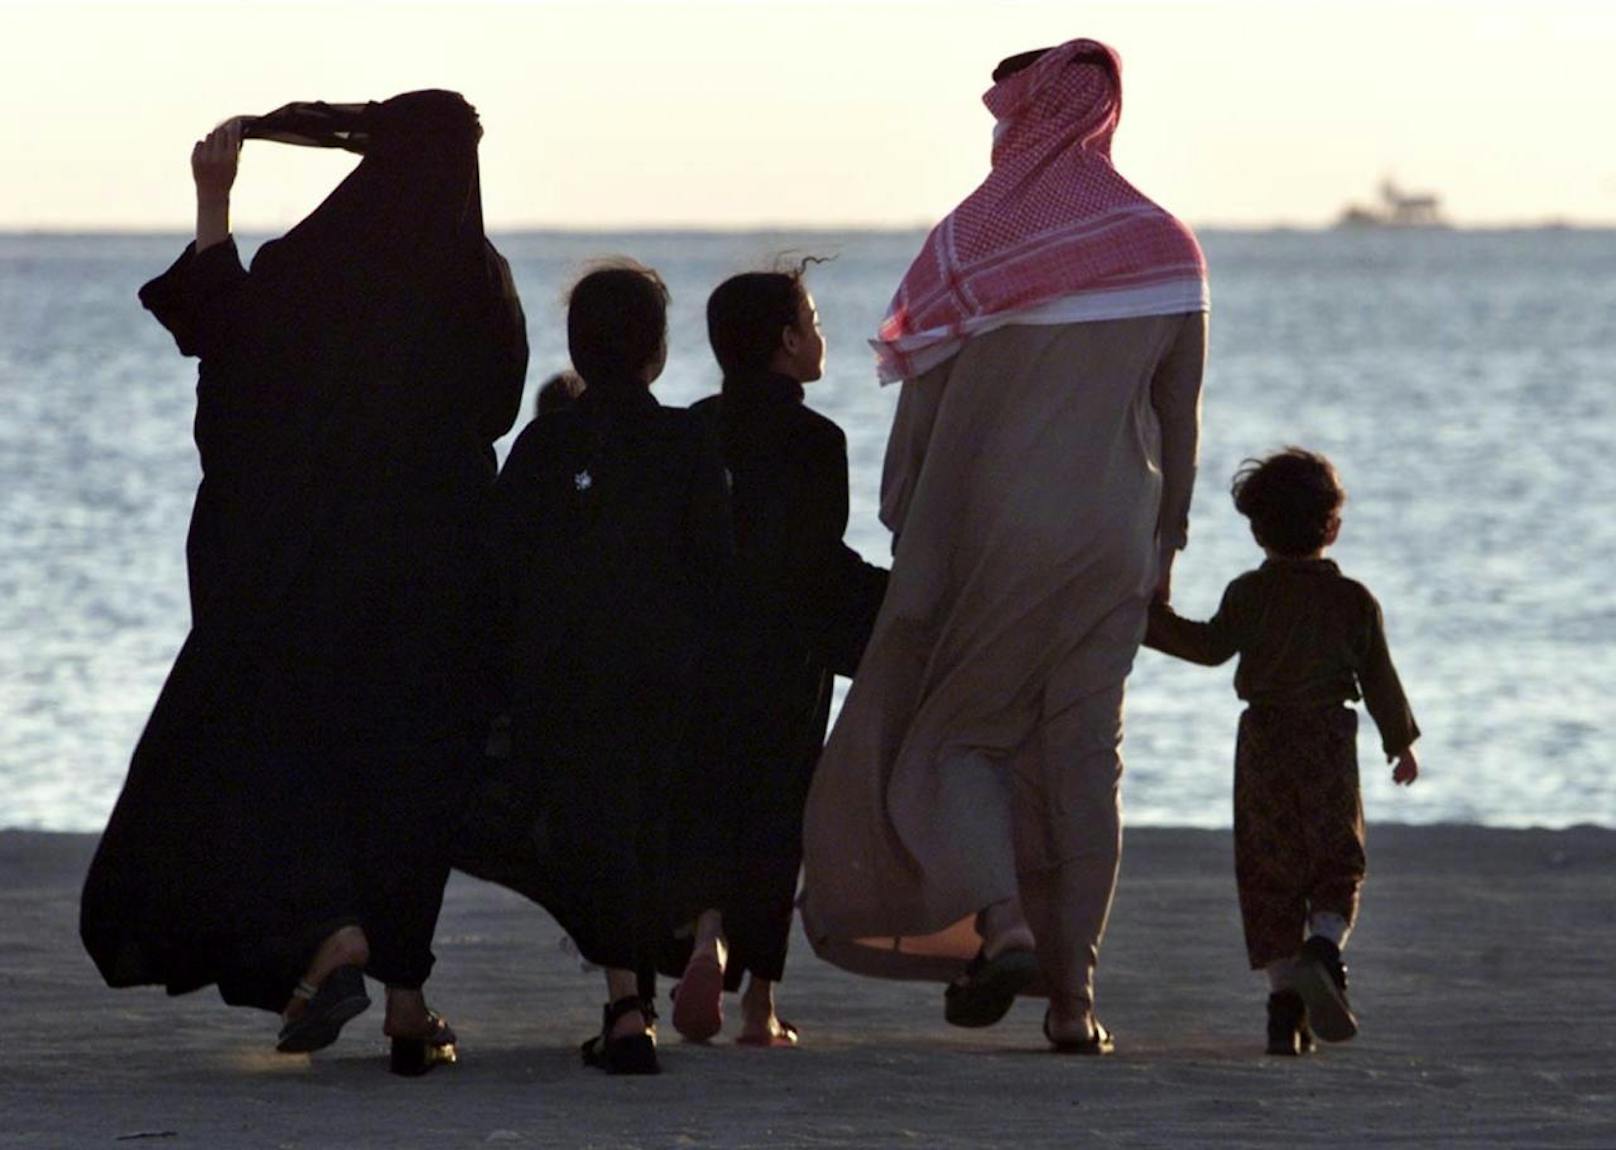 Frauen müssen sich in Saudi-Arabien verhüllen. In der halbautonomen Touristenzone sollen lockerere Vorschriften als im Rest des Landes gelten.